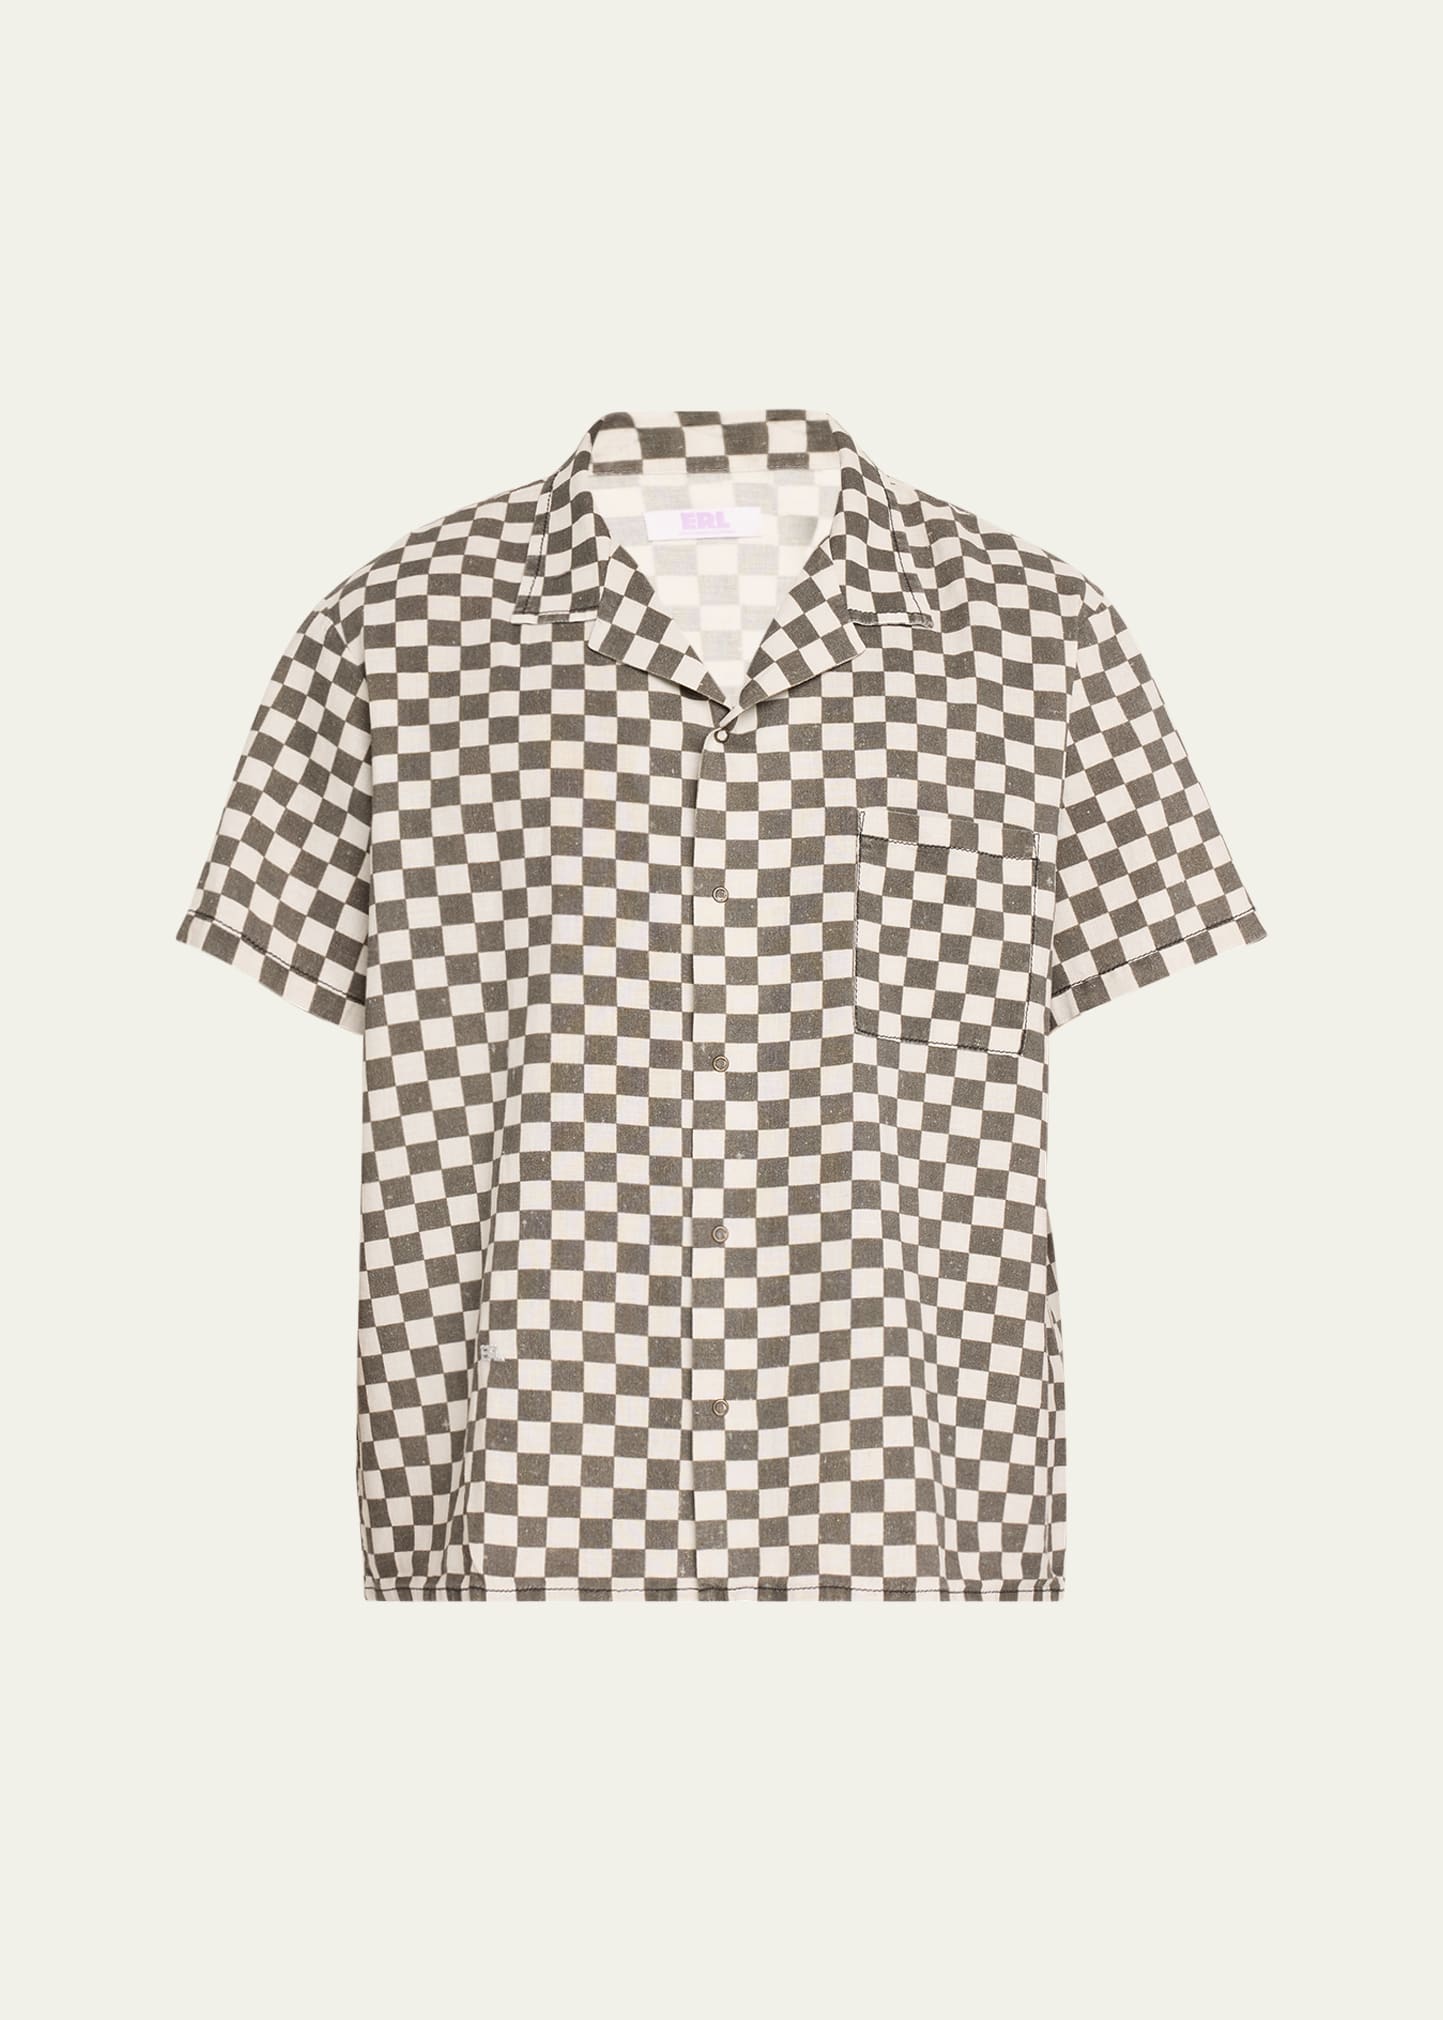 Shop Erl Men's Cotton-linen Checkered Camp Shirt